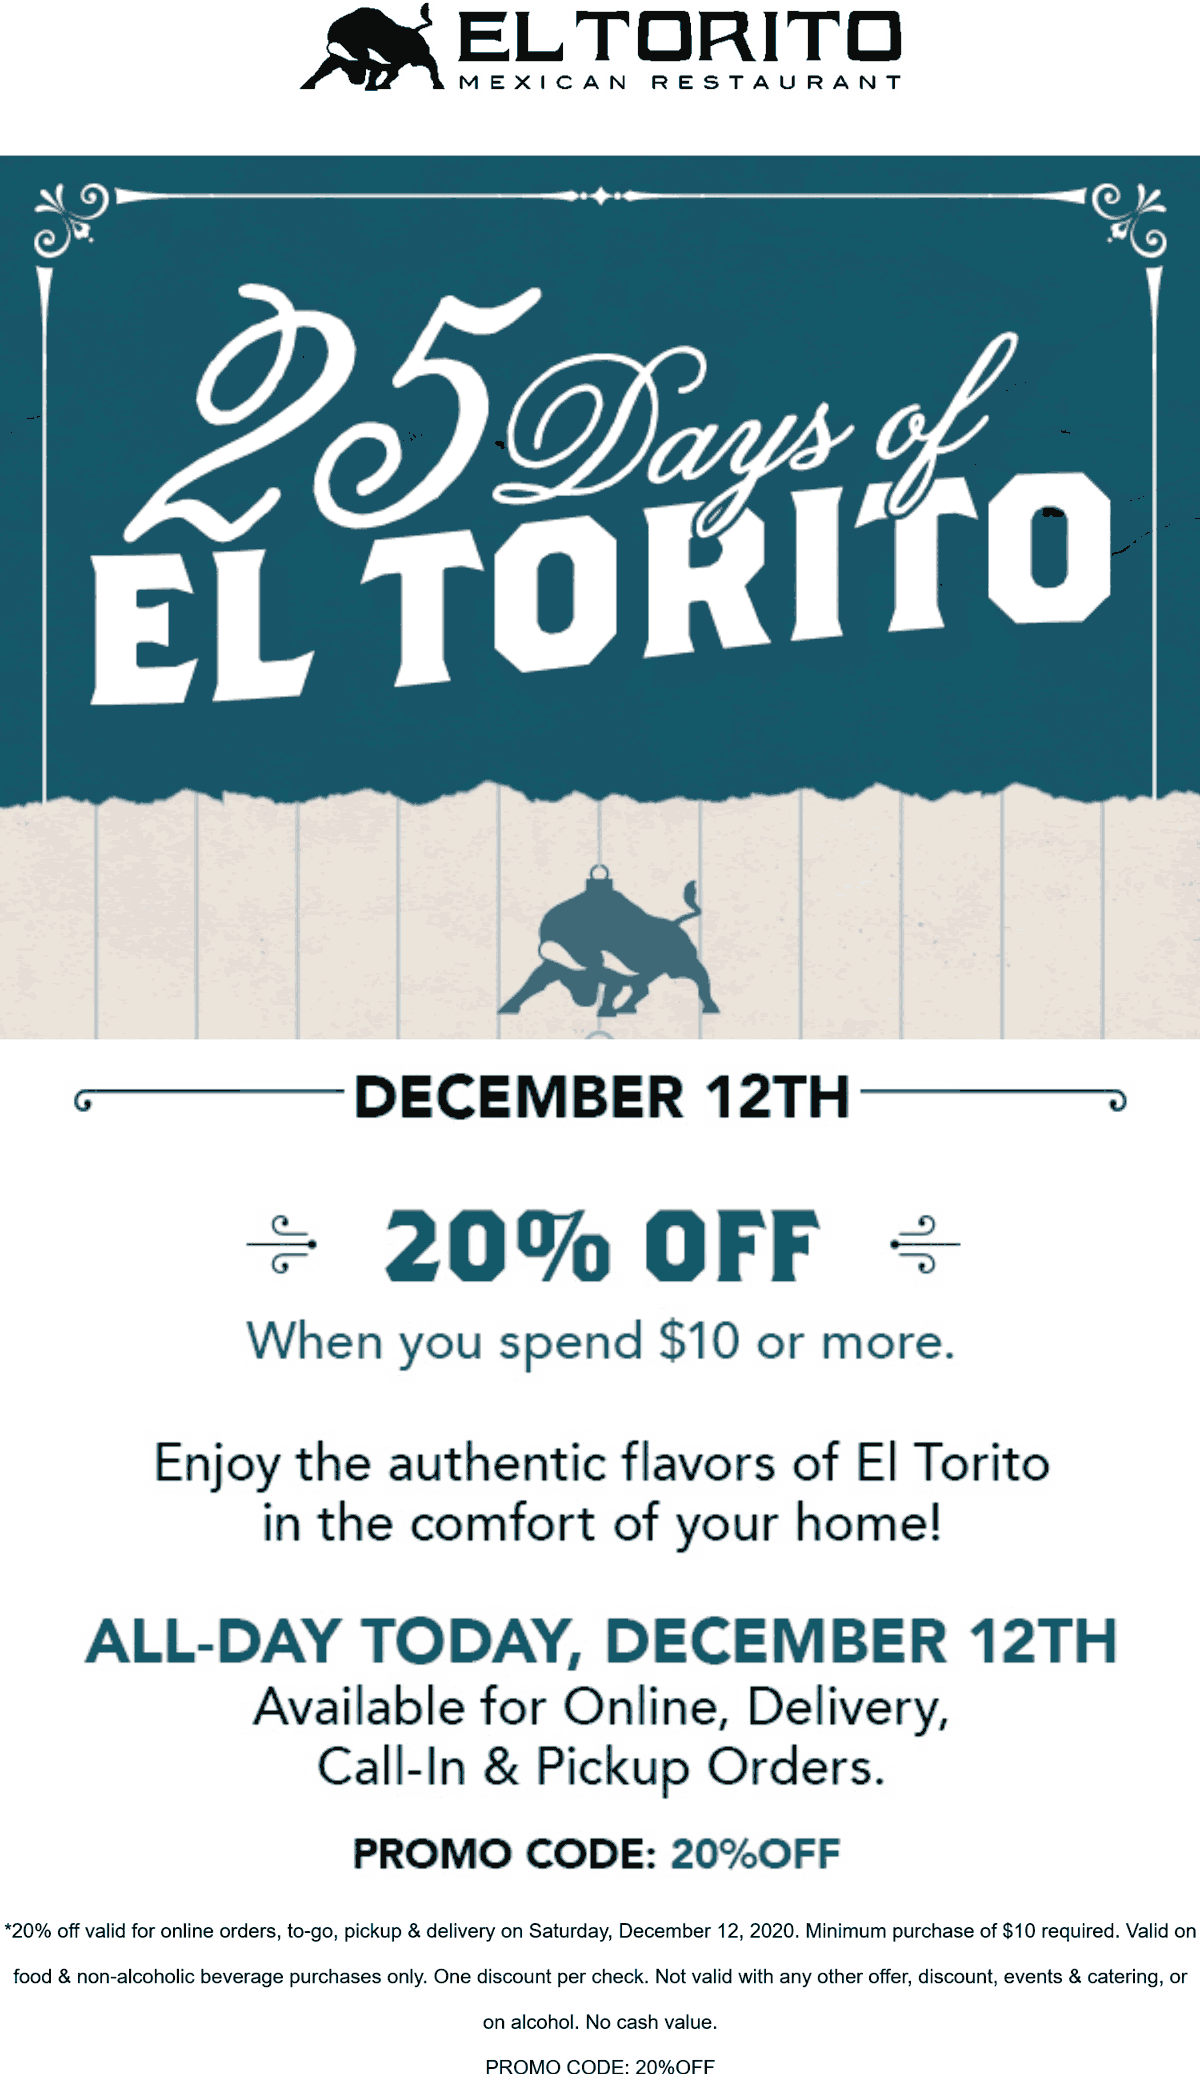 El Torito restaurants Coupon  20% off today at El Torito Mexican restaurants via promo code 20%OFF #eltorito 